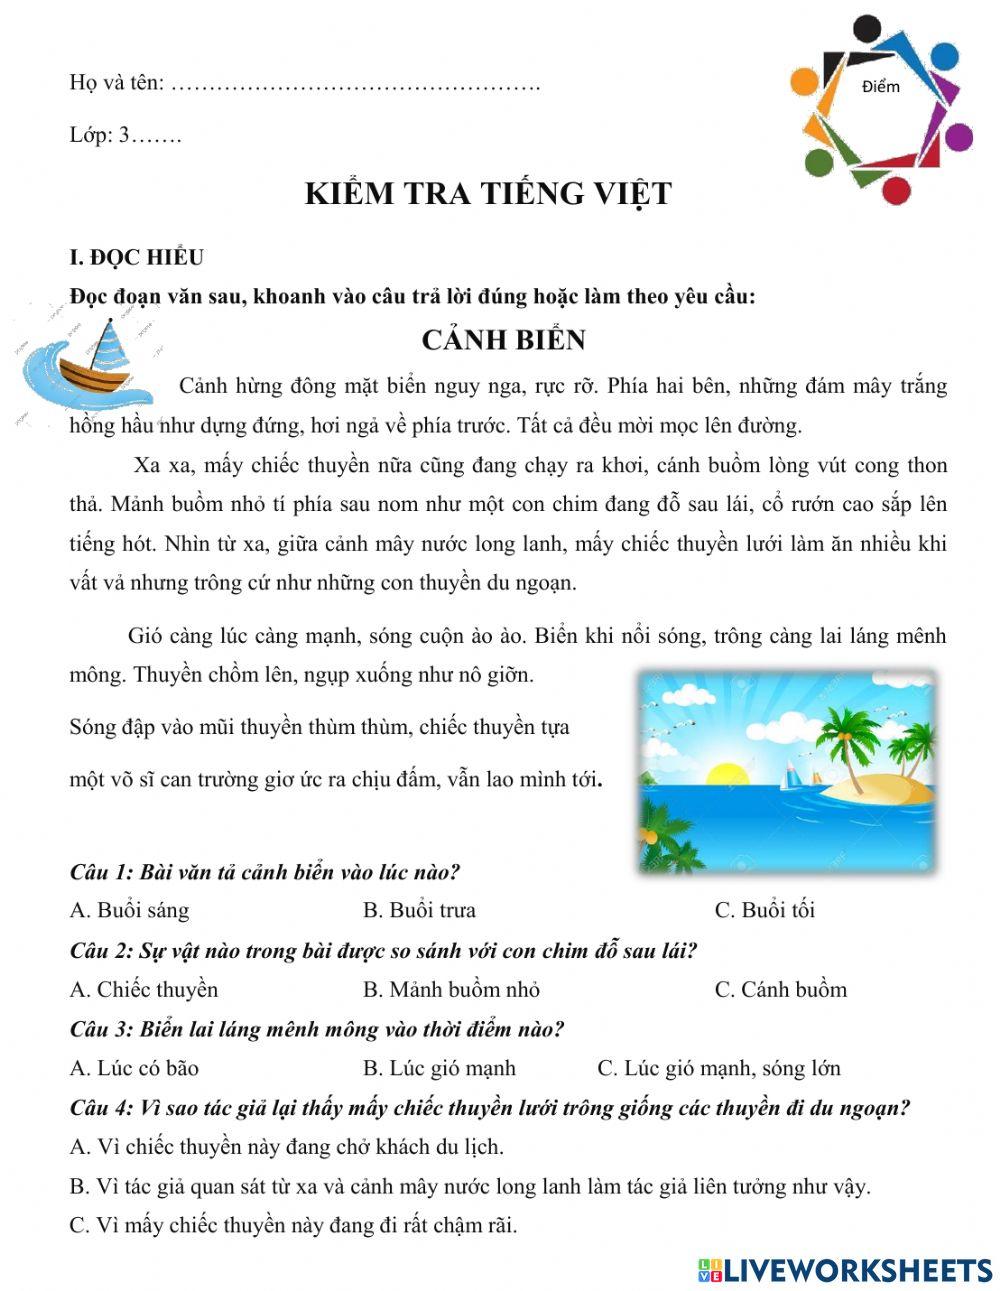 Kiểm tra Tiếng Việt